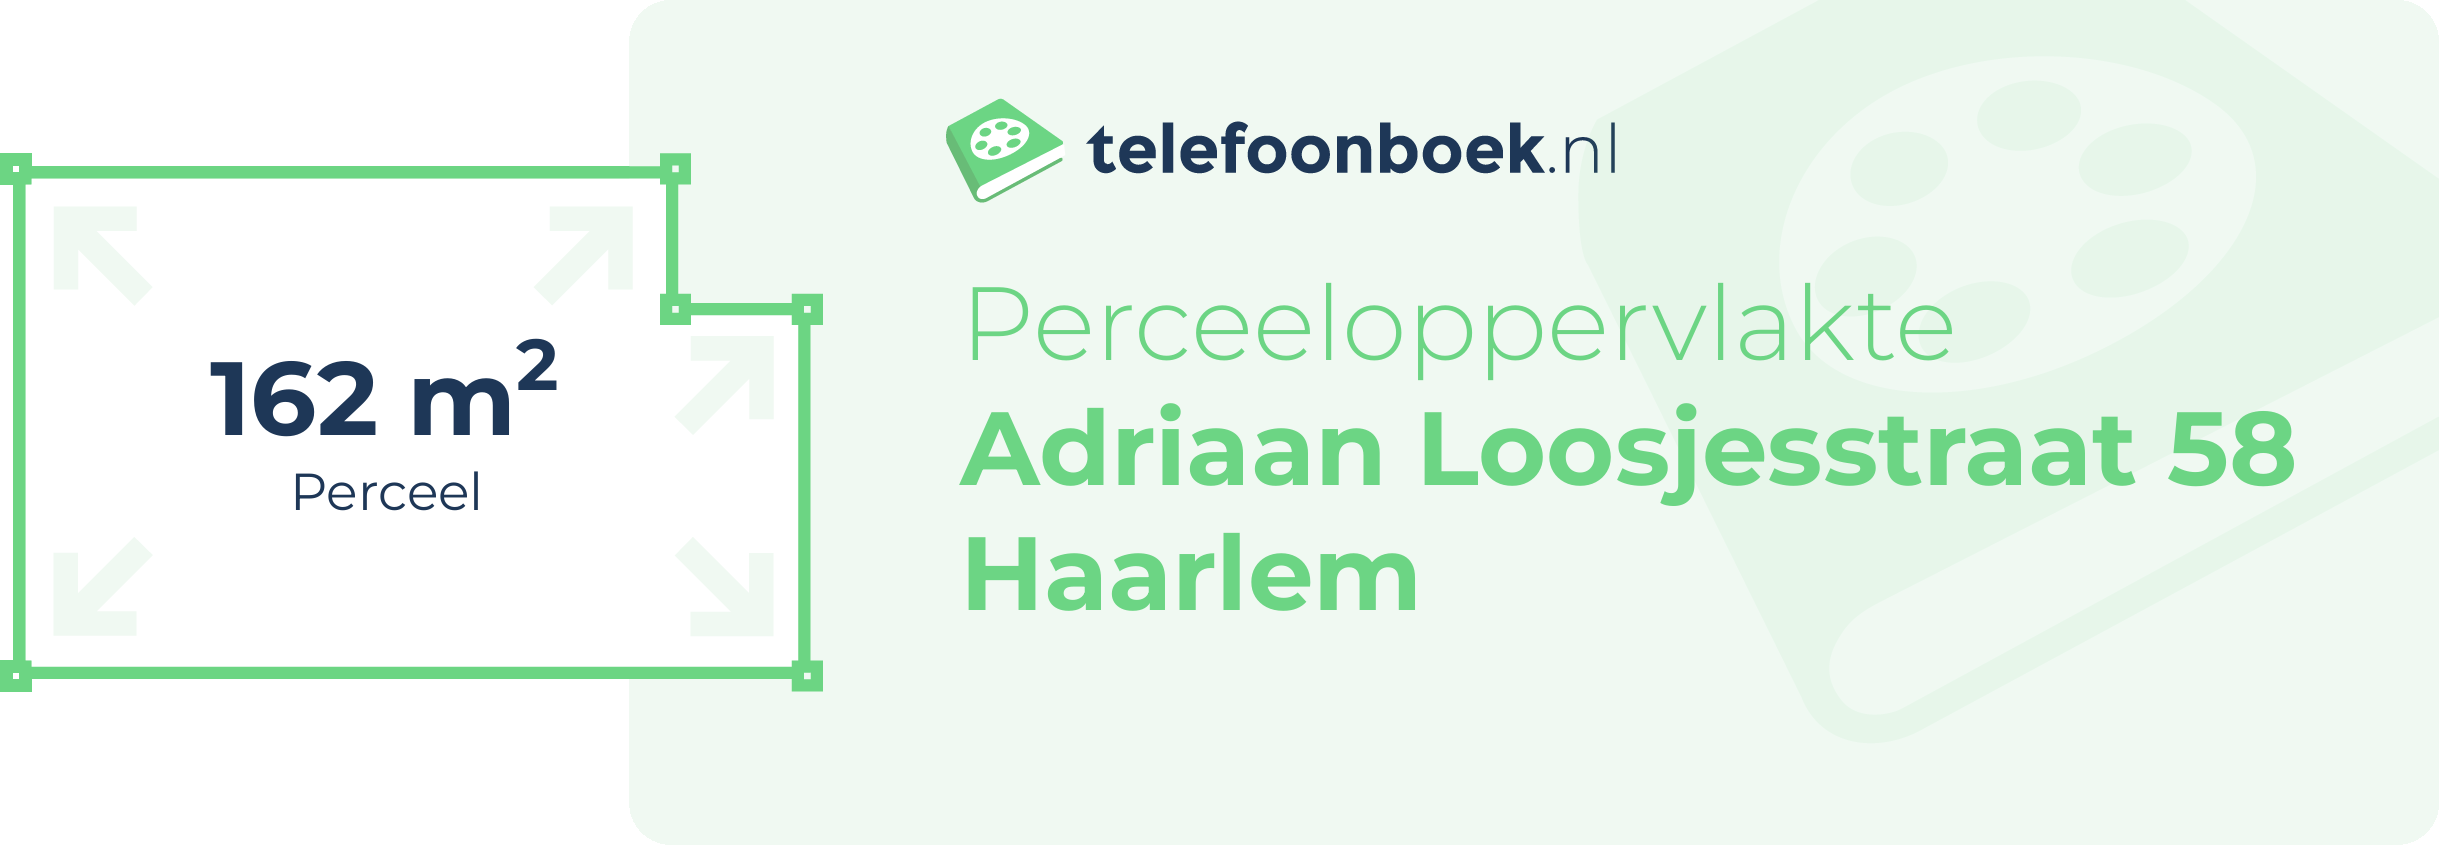 Perceeloppervlakte Adriaan Loosjesstraat 58 Haarlem